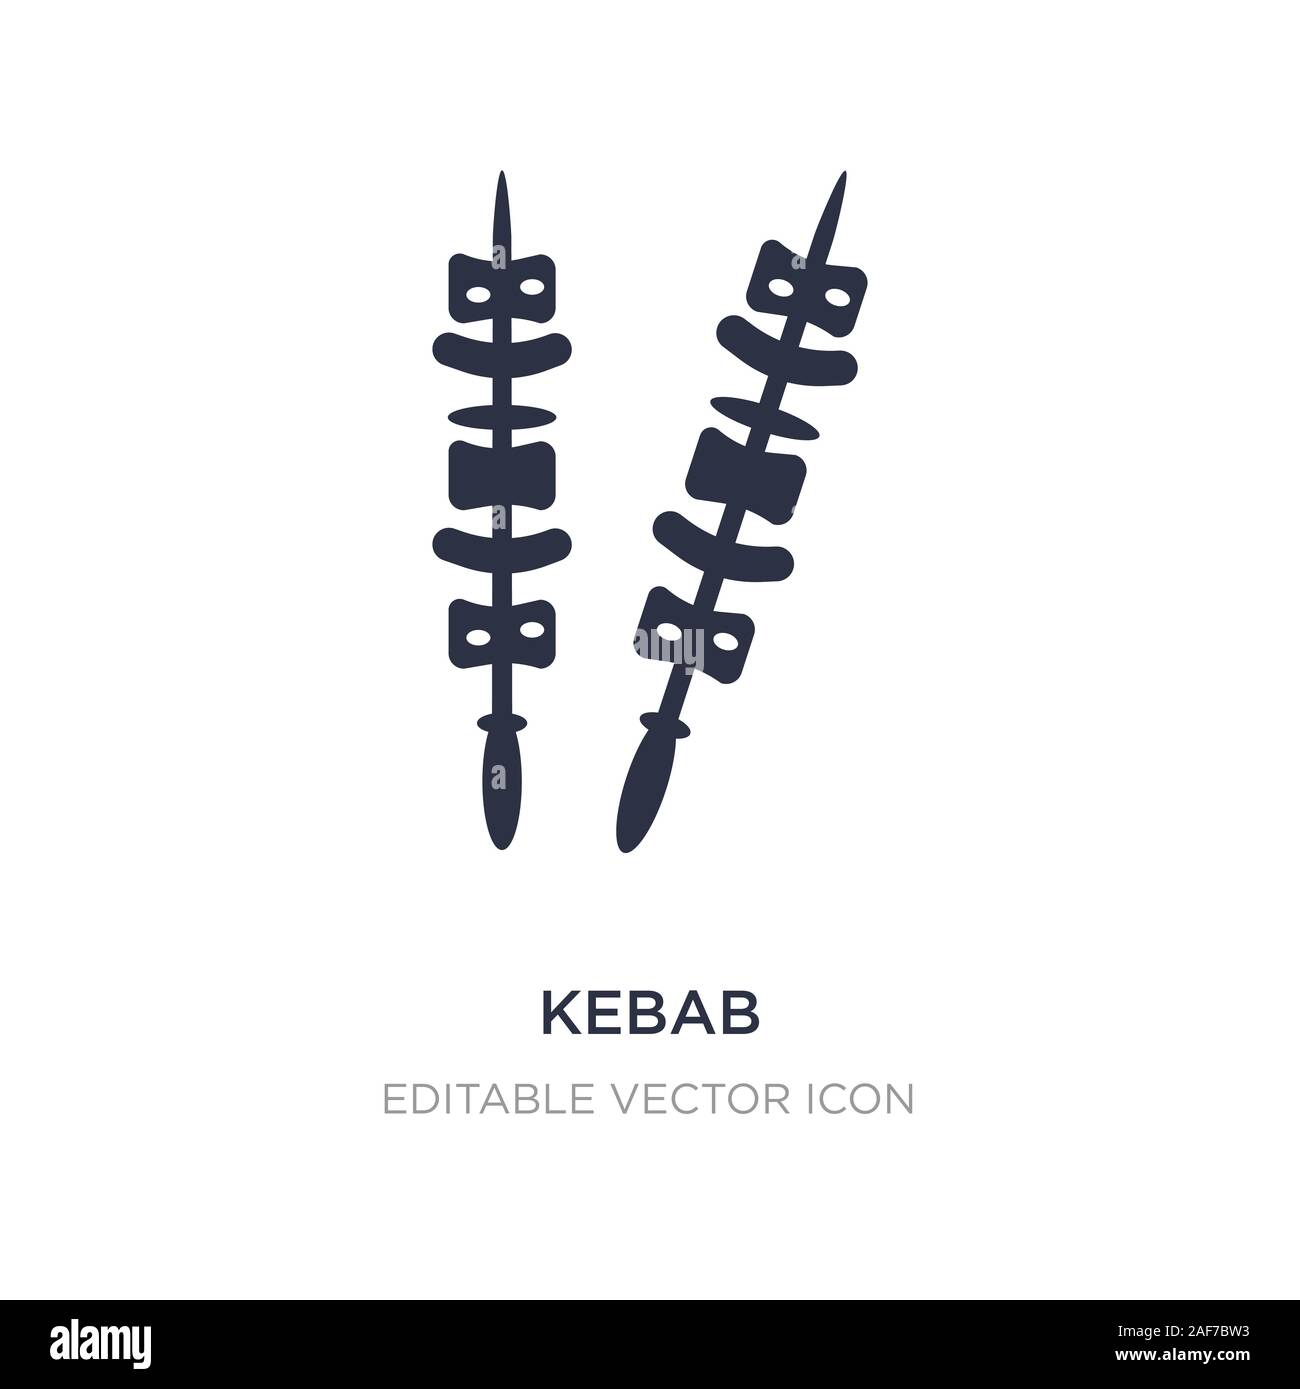 L'icône de kebab sur fond blanc. Élément simple illustration de Food concept design symbole icône kebab.. Illustration de Vecteur